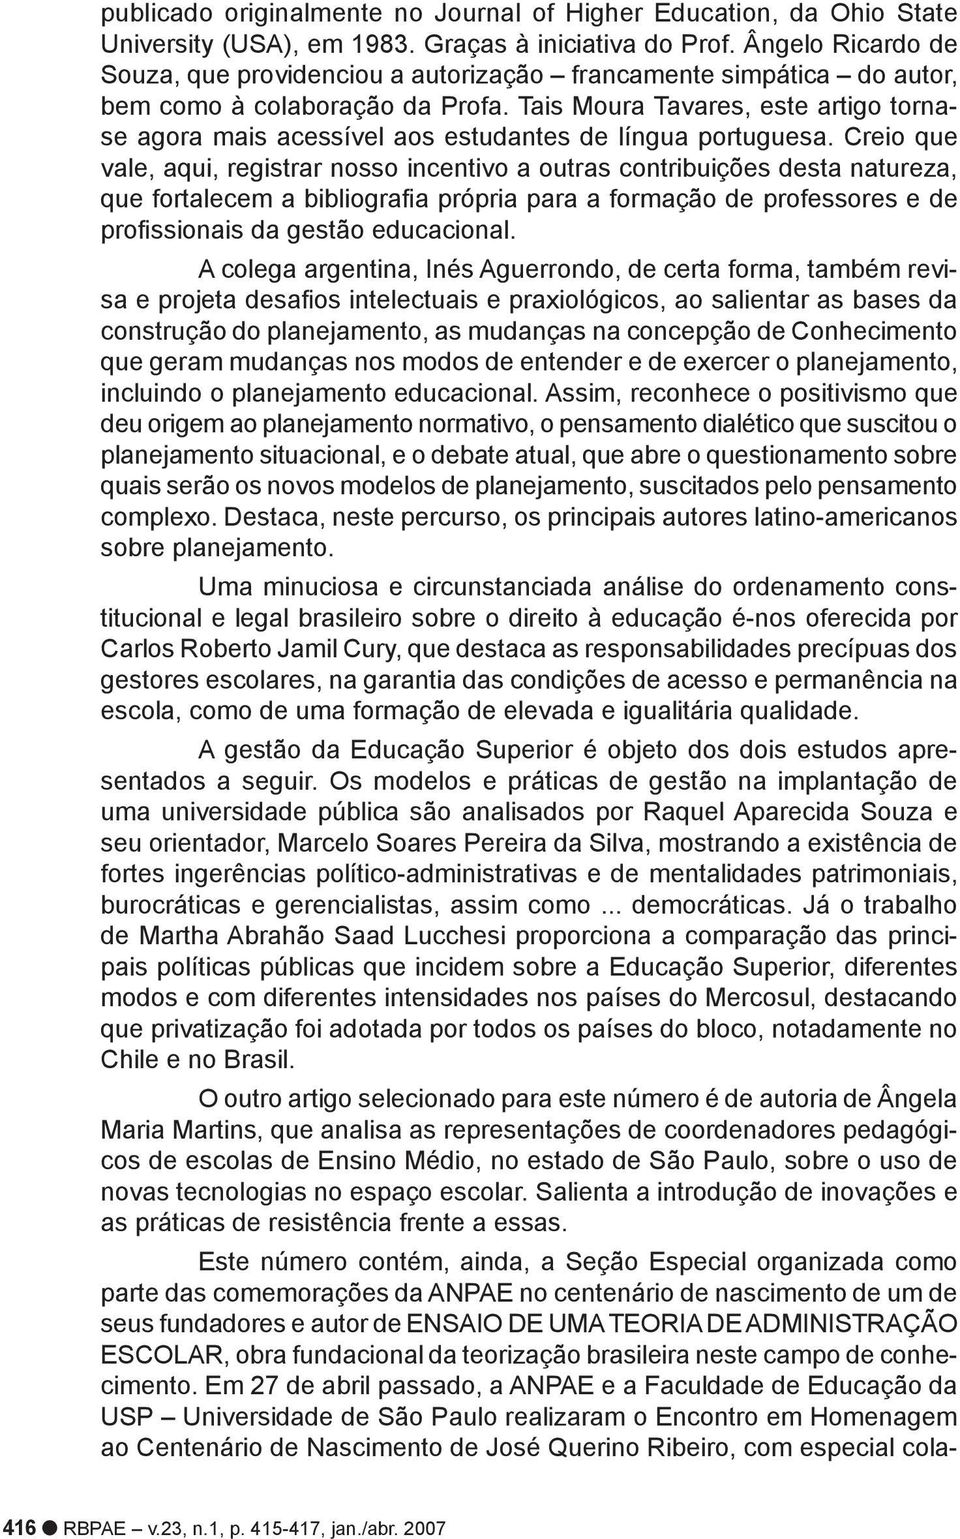 Tais Moura Tavares, este artigo tornase agora mais acessível aos estudantes de língua portuguesa.